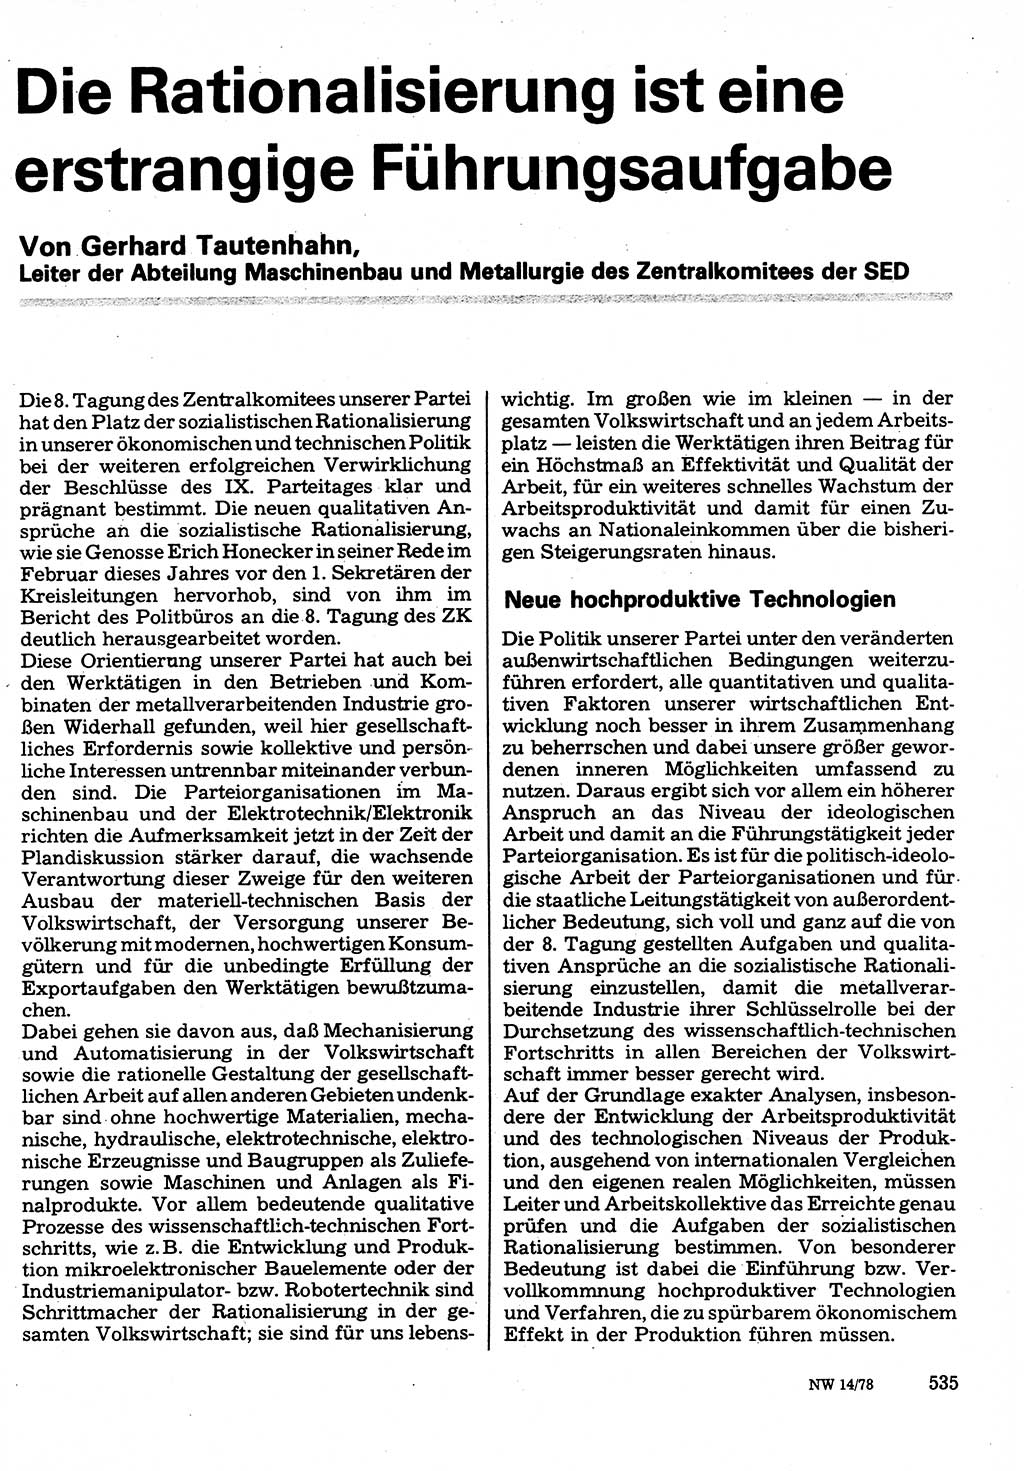 Neuer Weg (NW), Organ des Zentralkomitees (ZK) der SED (Sozialistische Einheitspartei Deutschlands) für Fragen des Parteilebens, 33. Jahrgang [Deutsche Demokratische Republik (DDR)] 1978, Seite 535 (NW ZK SED DDR 1978, S. 535)